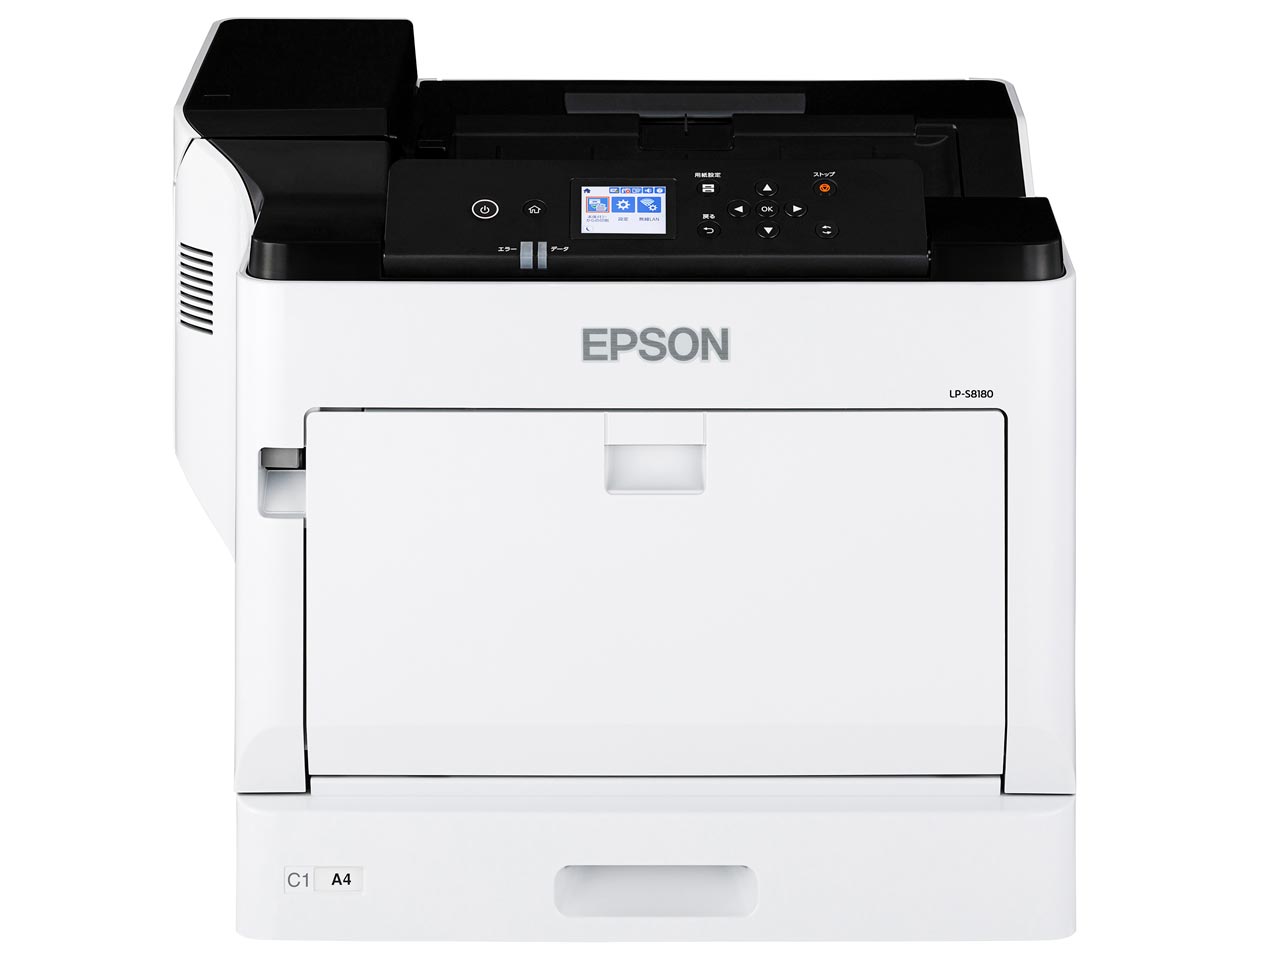 Epson LP-S8180